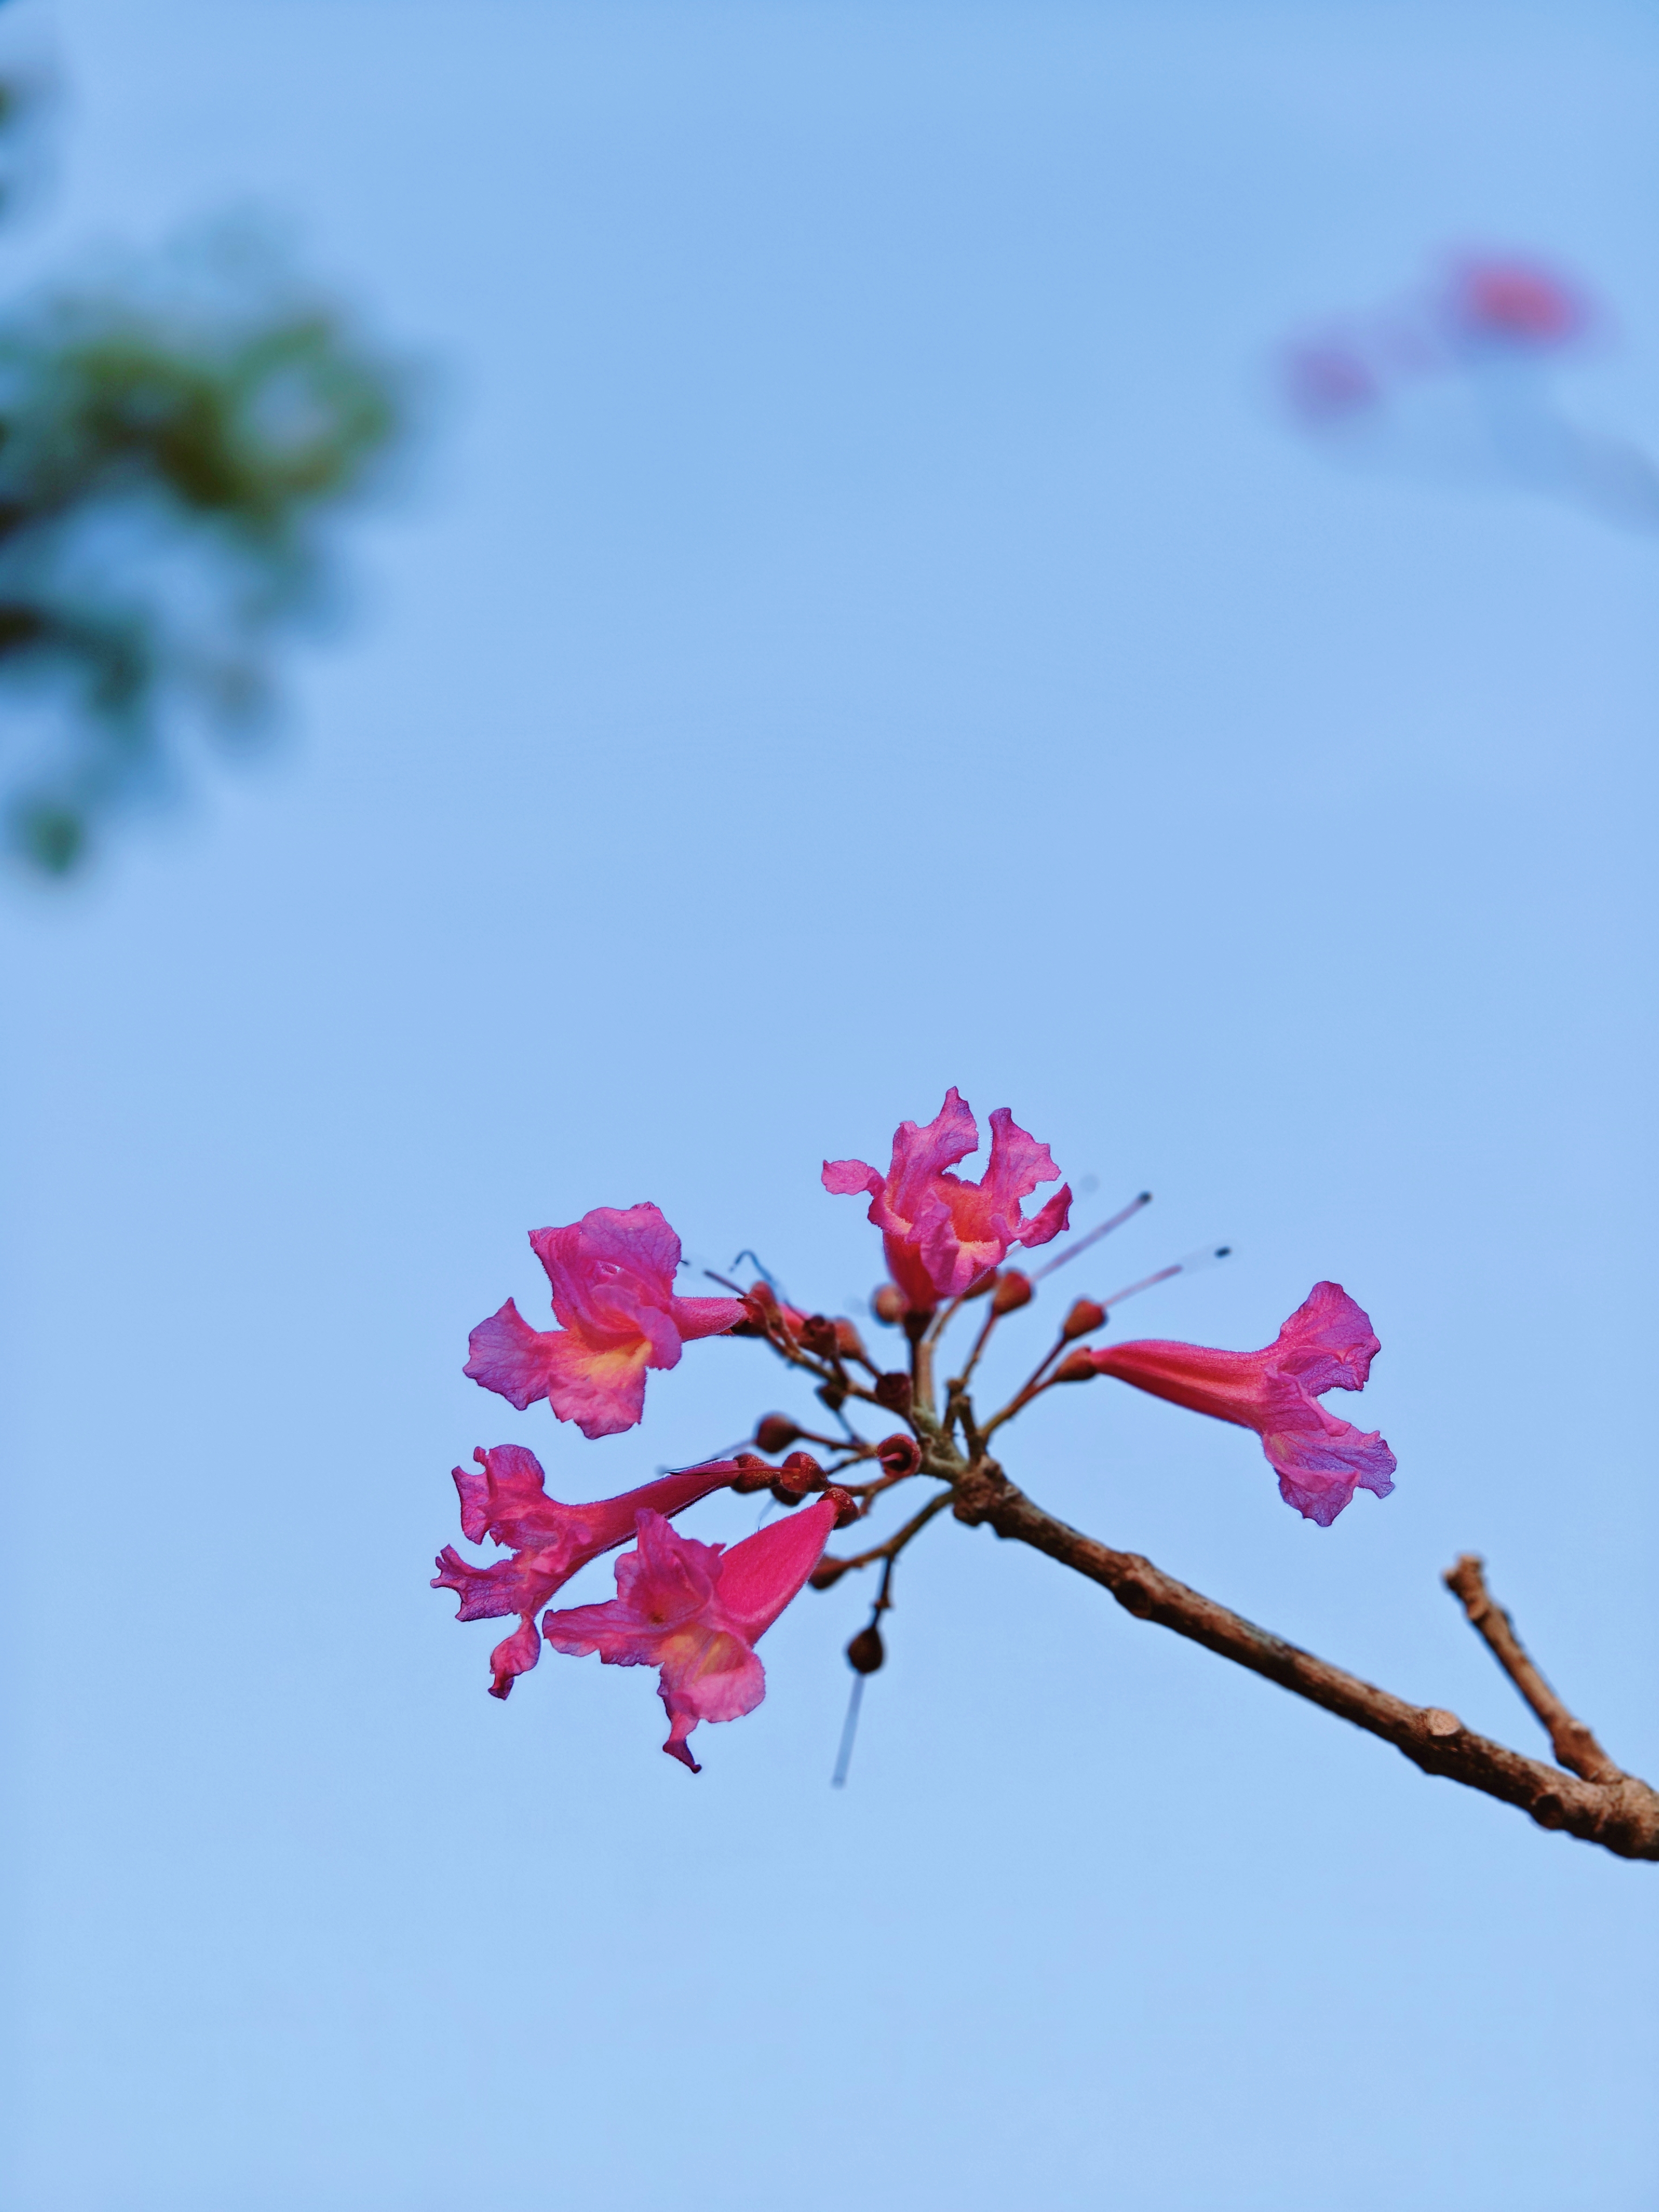 漫步在春天的午后,阳光洒落,我意外邂逅了那棵开着粉色花朵的树